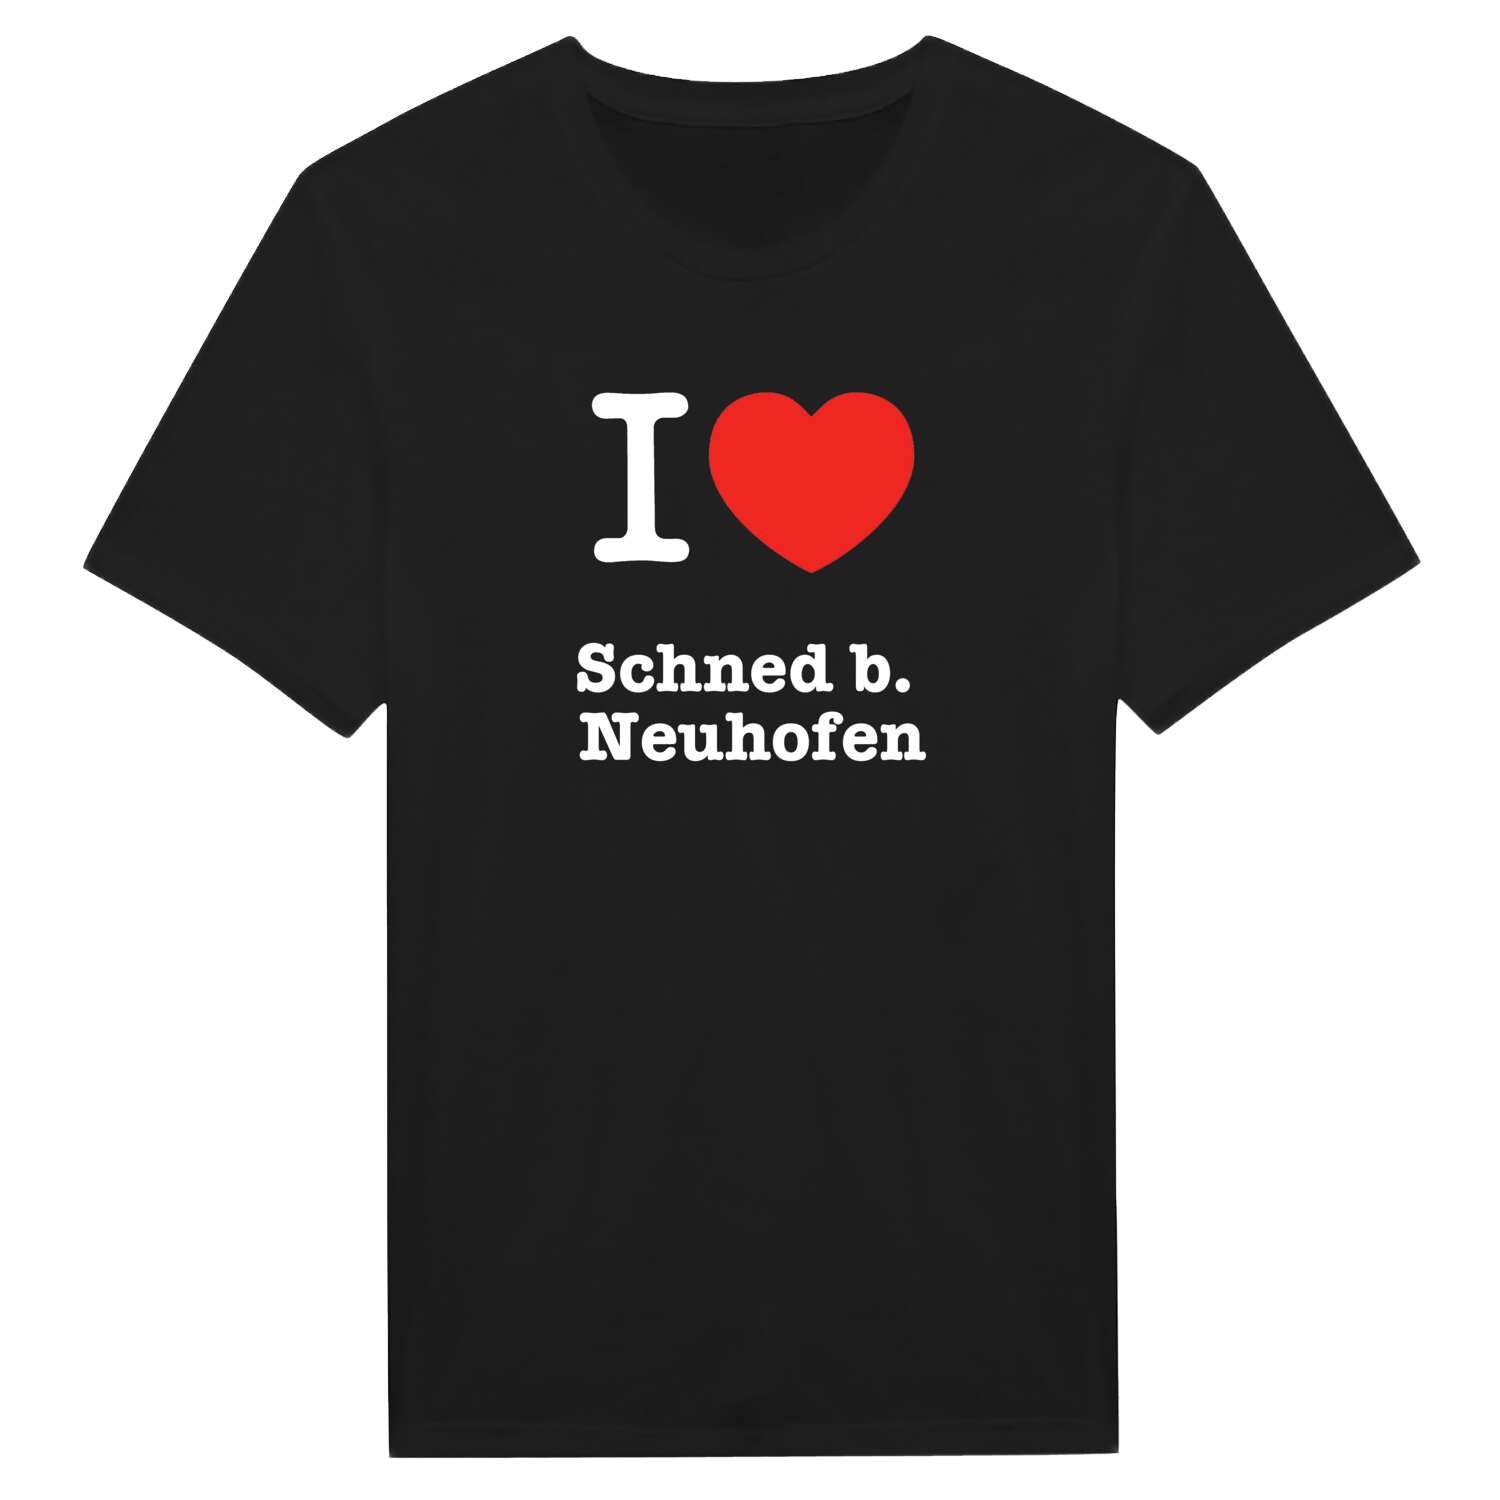 Schned b. Neuhofen T-Shirt »I love«